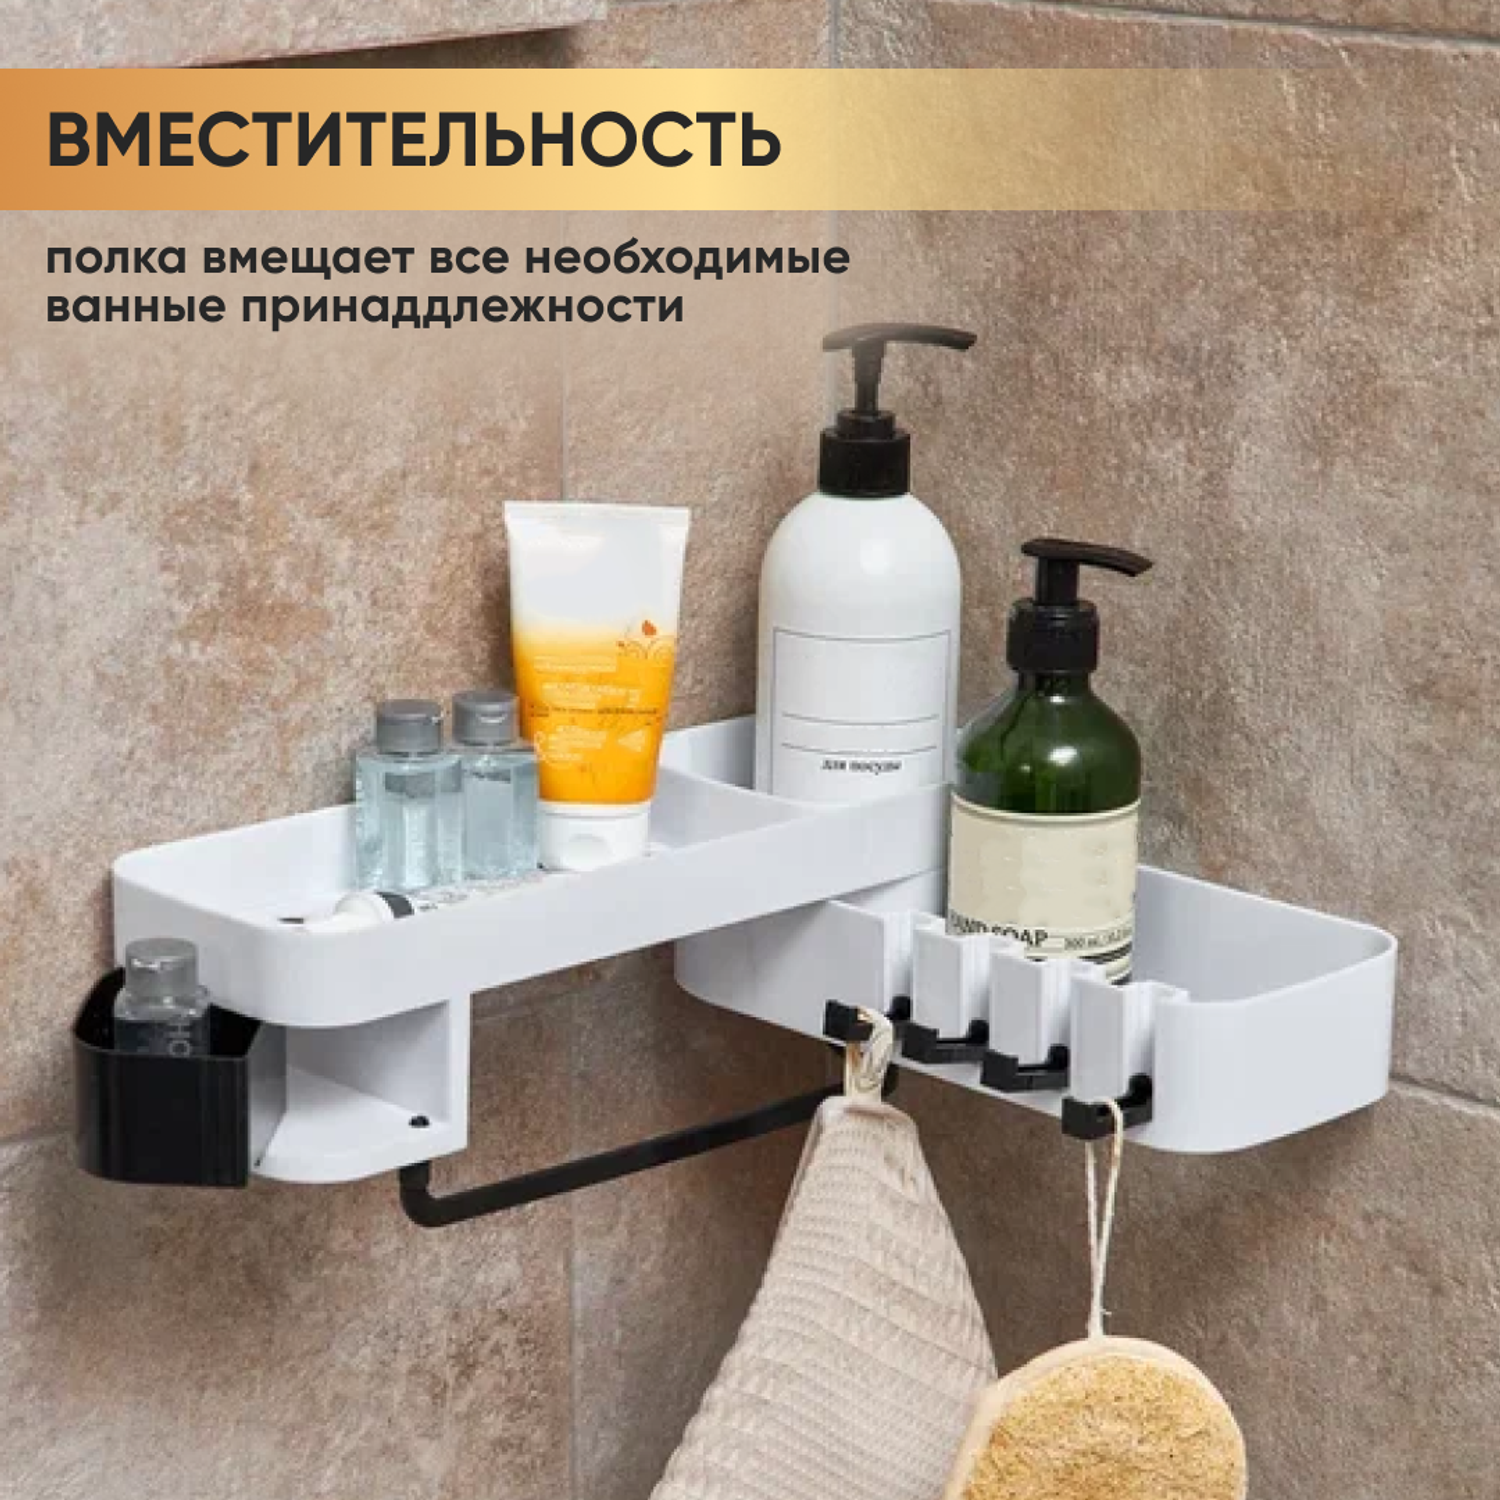 Полка для ванной комнаты oqqi с 4 крючками и держателями для полотенец - фото 3